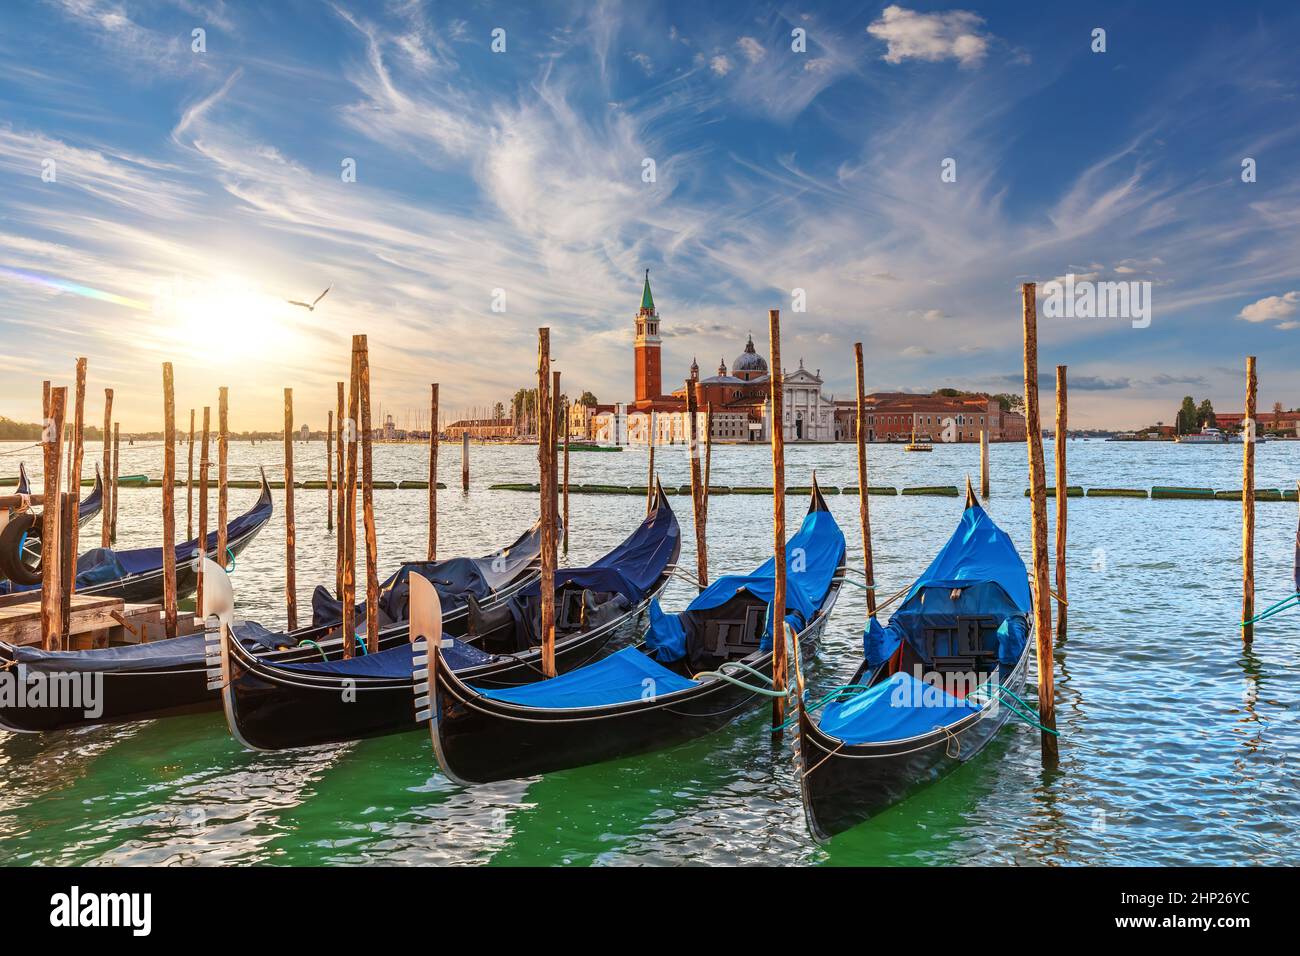 The island of San Giorgio Maggiore and traditional gondolas of Venice, Italy. Stock Photo